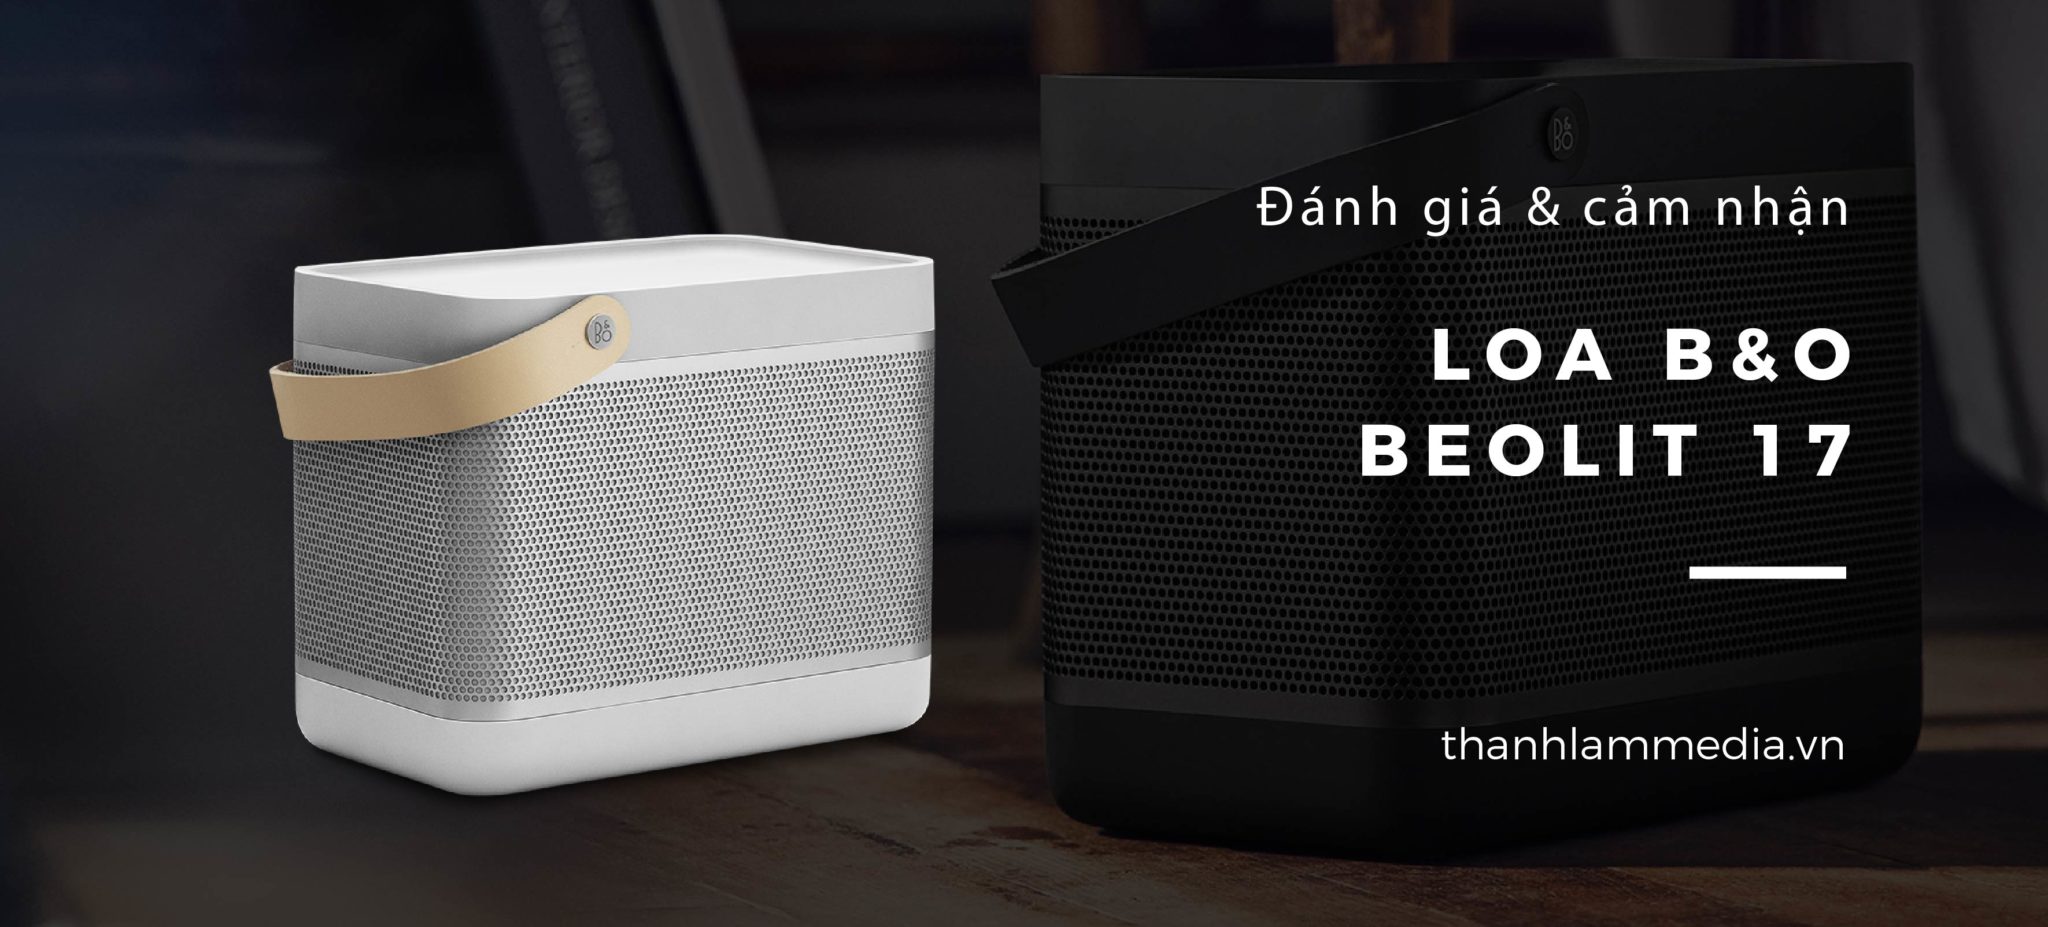 Review Đánh giá Loa Bluetooth B&O Beolit 17: Thiết kế độc đáo, âm thanh sống động 7